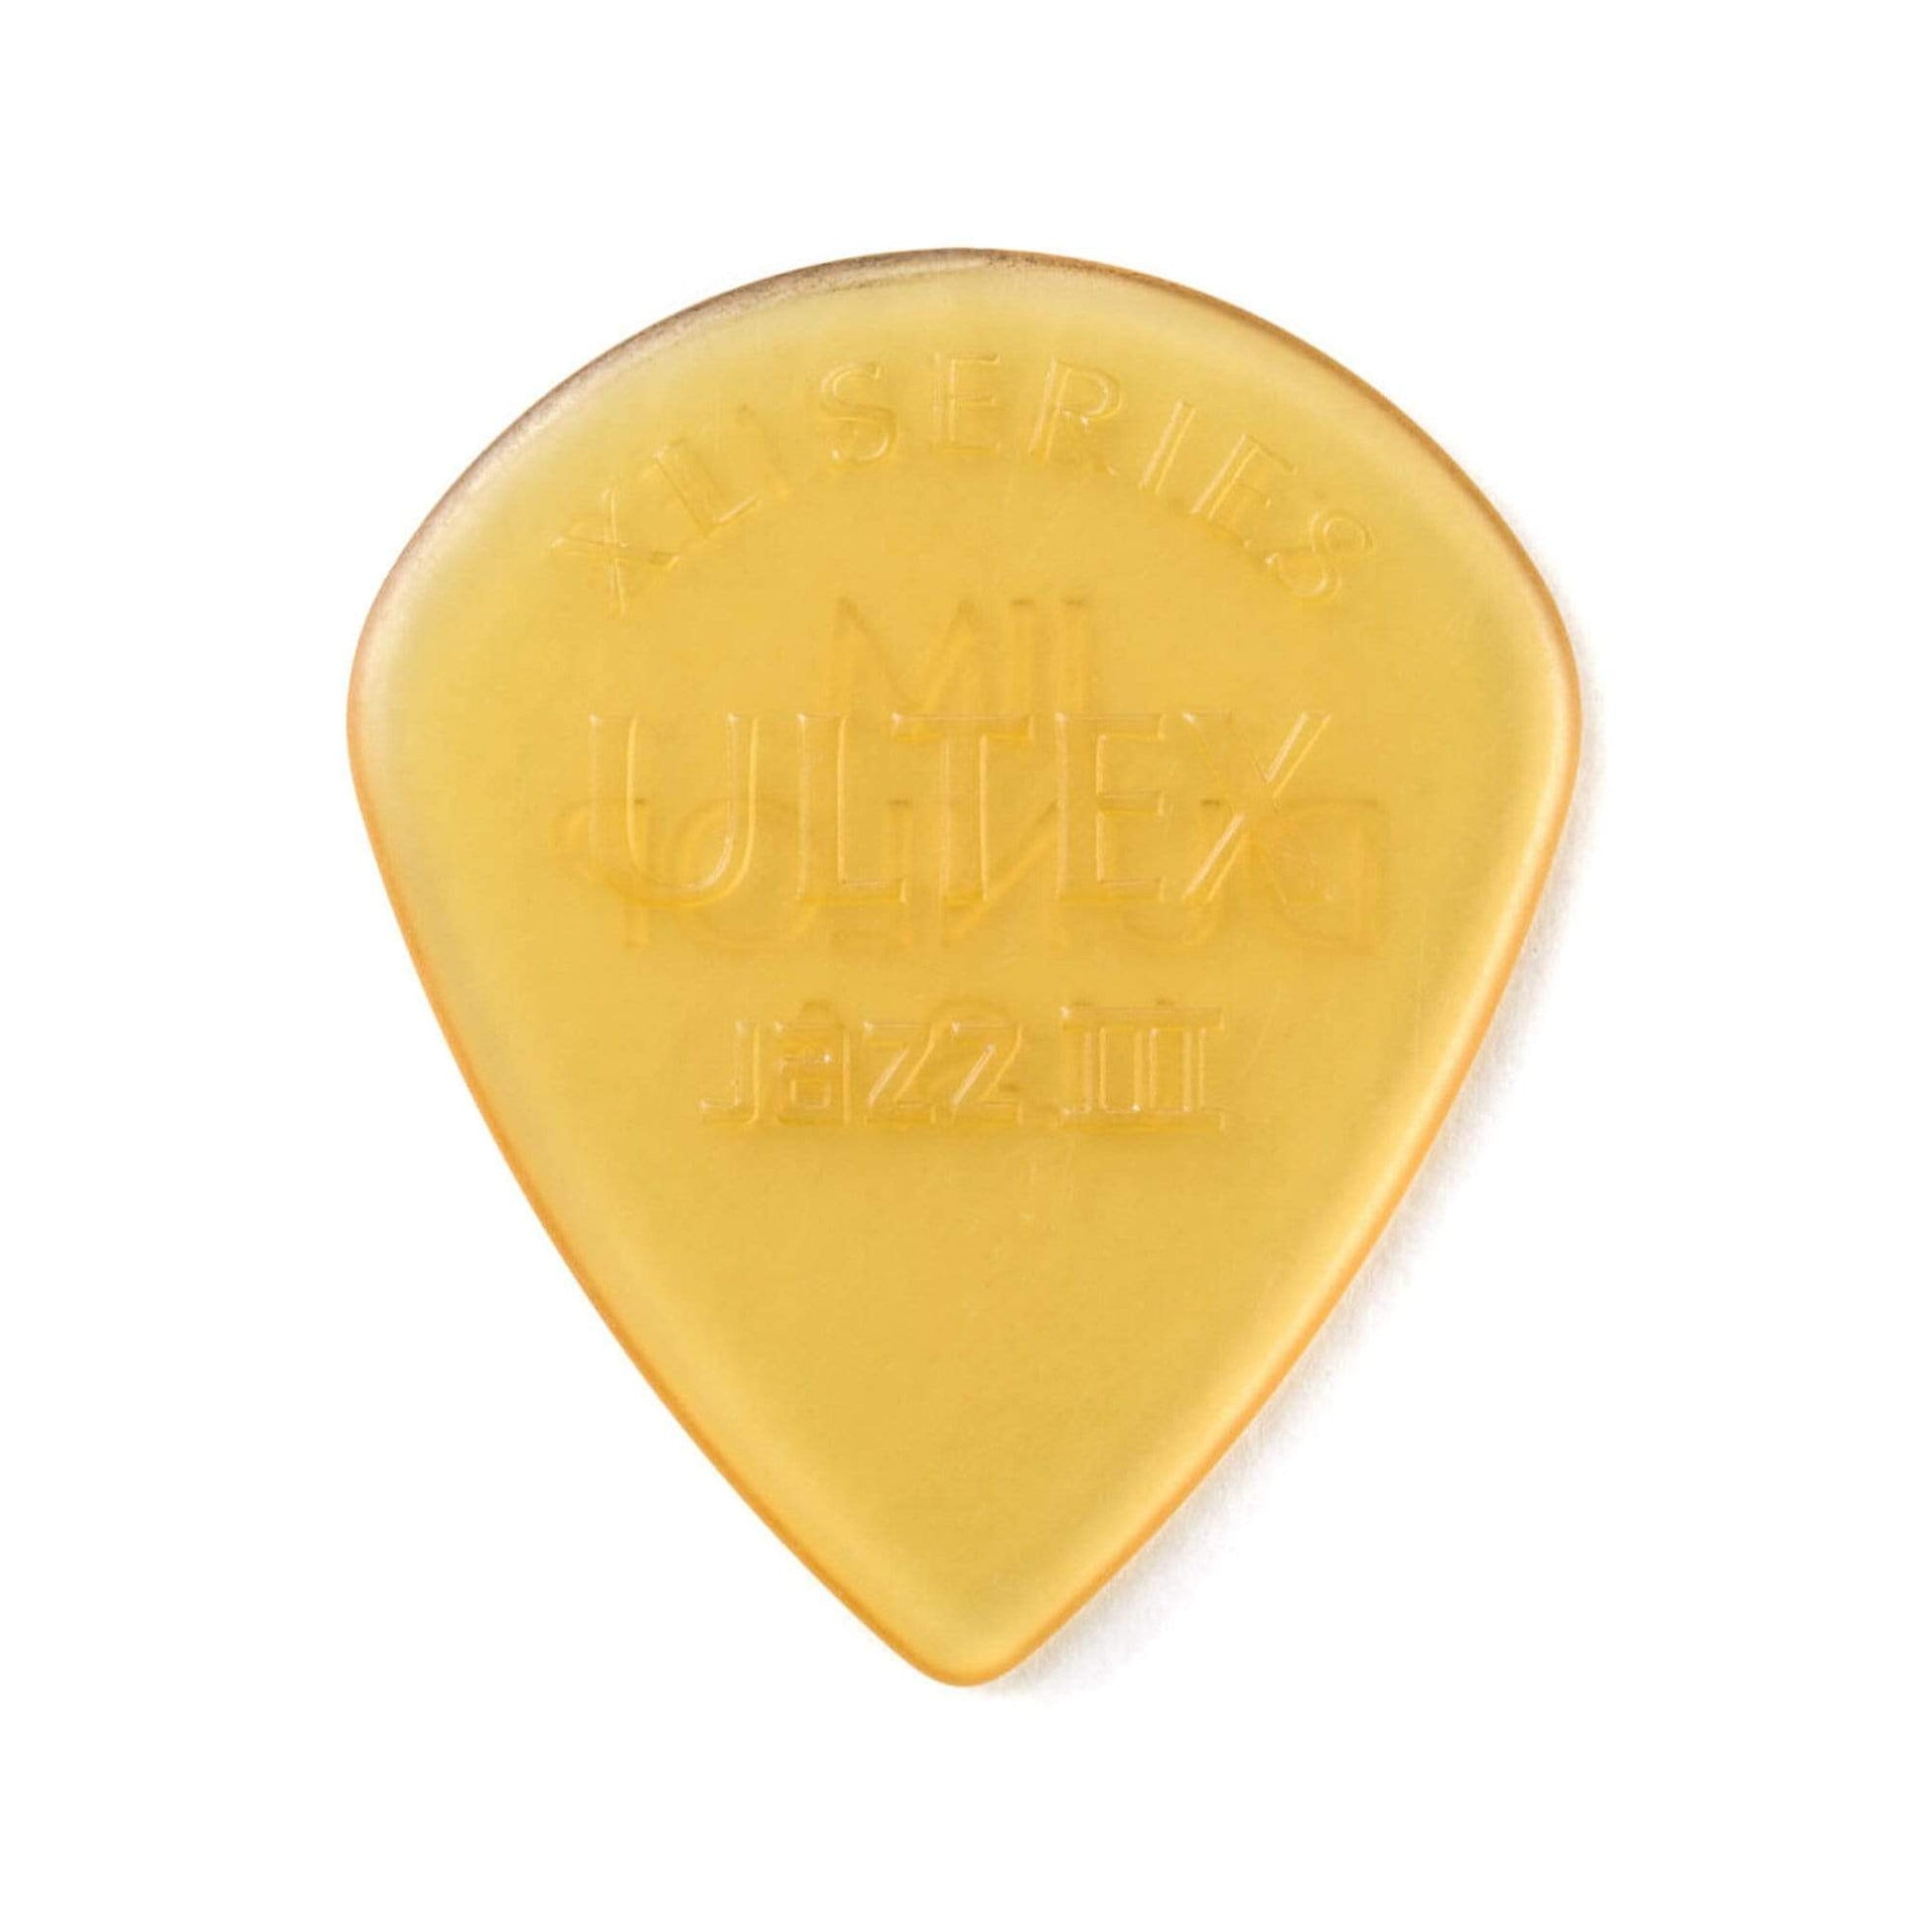 Dunlop Ultex Jazz III Guitar Picks XL Player's Pack (6) Accessories / Picks